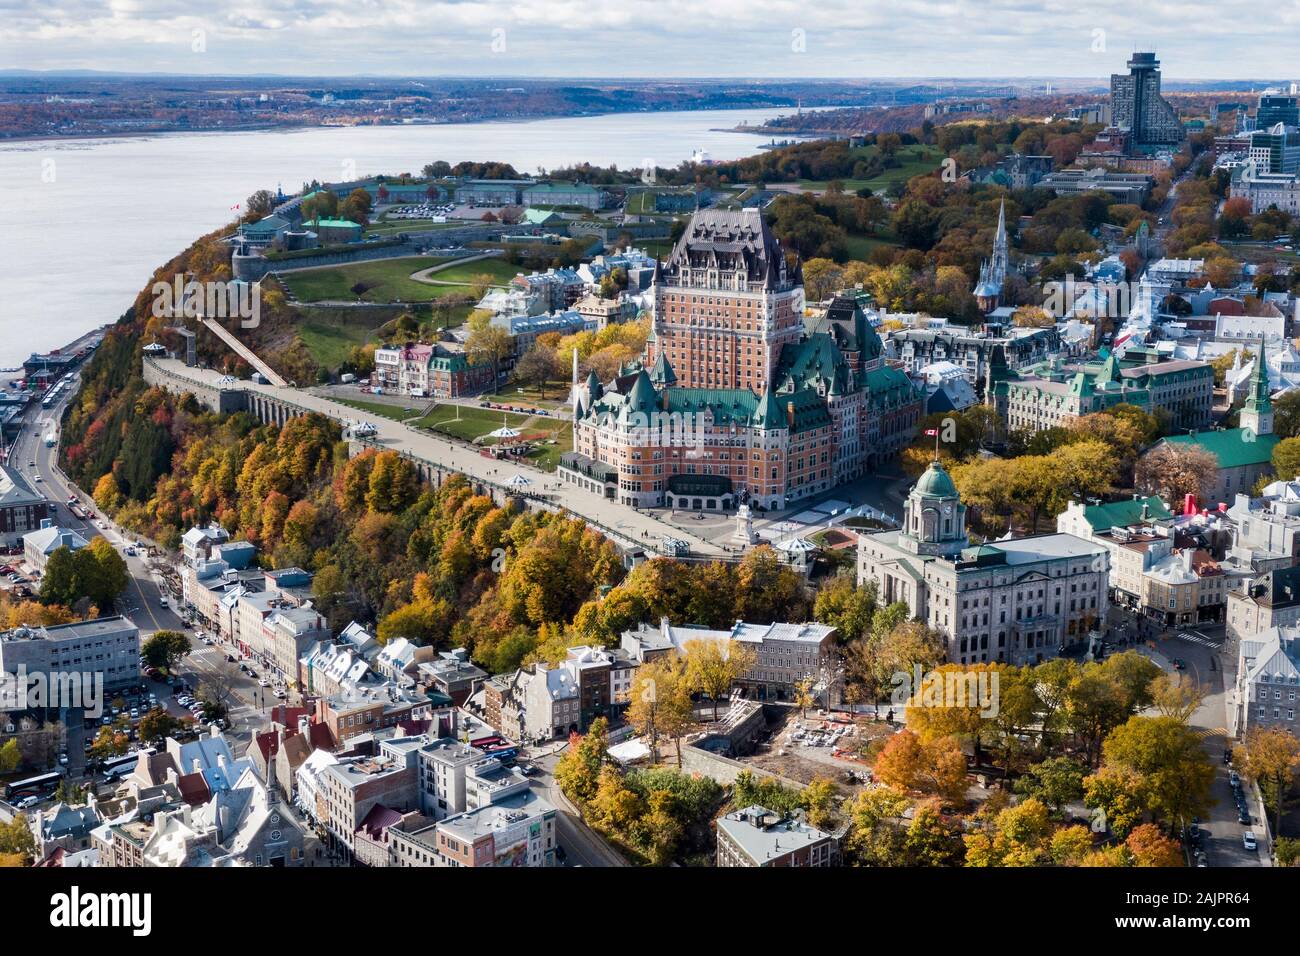 Vue aérienne du Château Frontenac dans le Vieux Québec durant la saison d'automne, Québec, Canada. Banque D'Images